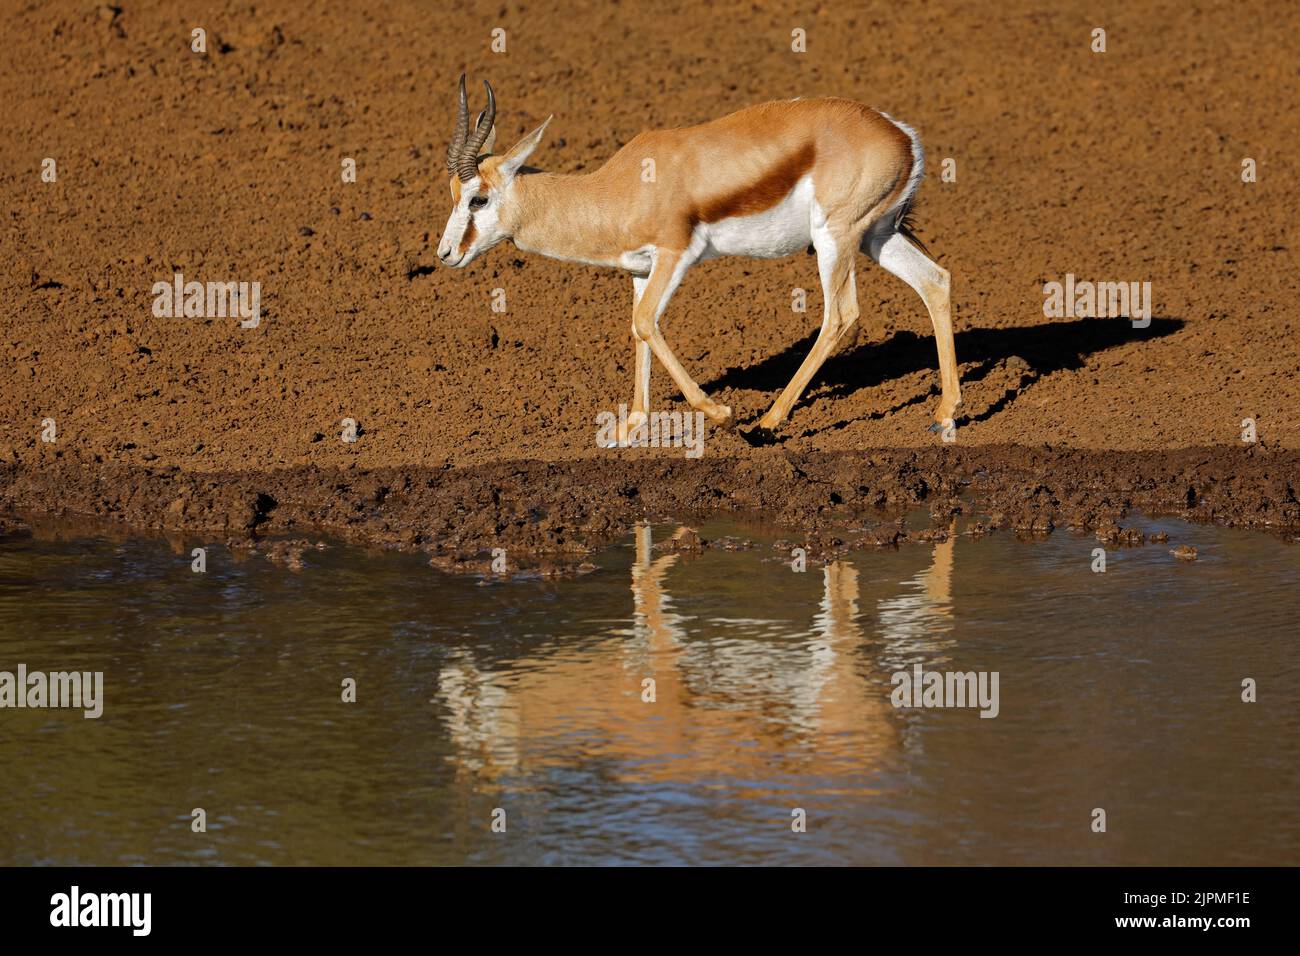 A springbok antelope (Antidorcas marsupialis) at a waterhole, Mokala National Park, South Africa Stock Photo